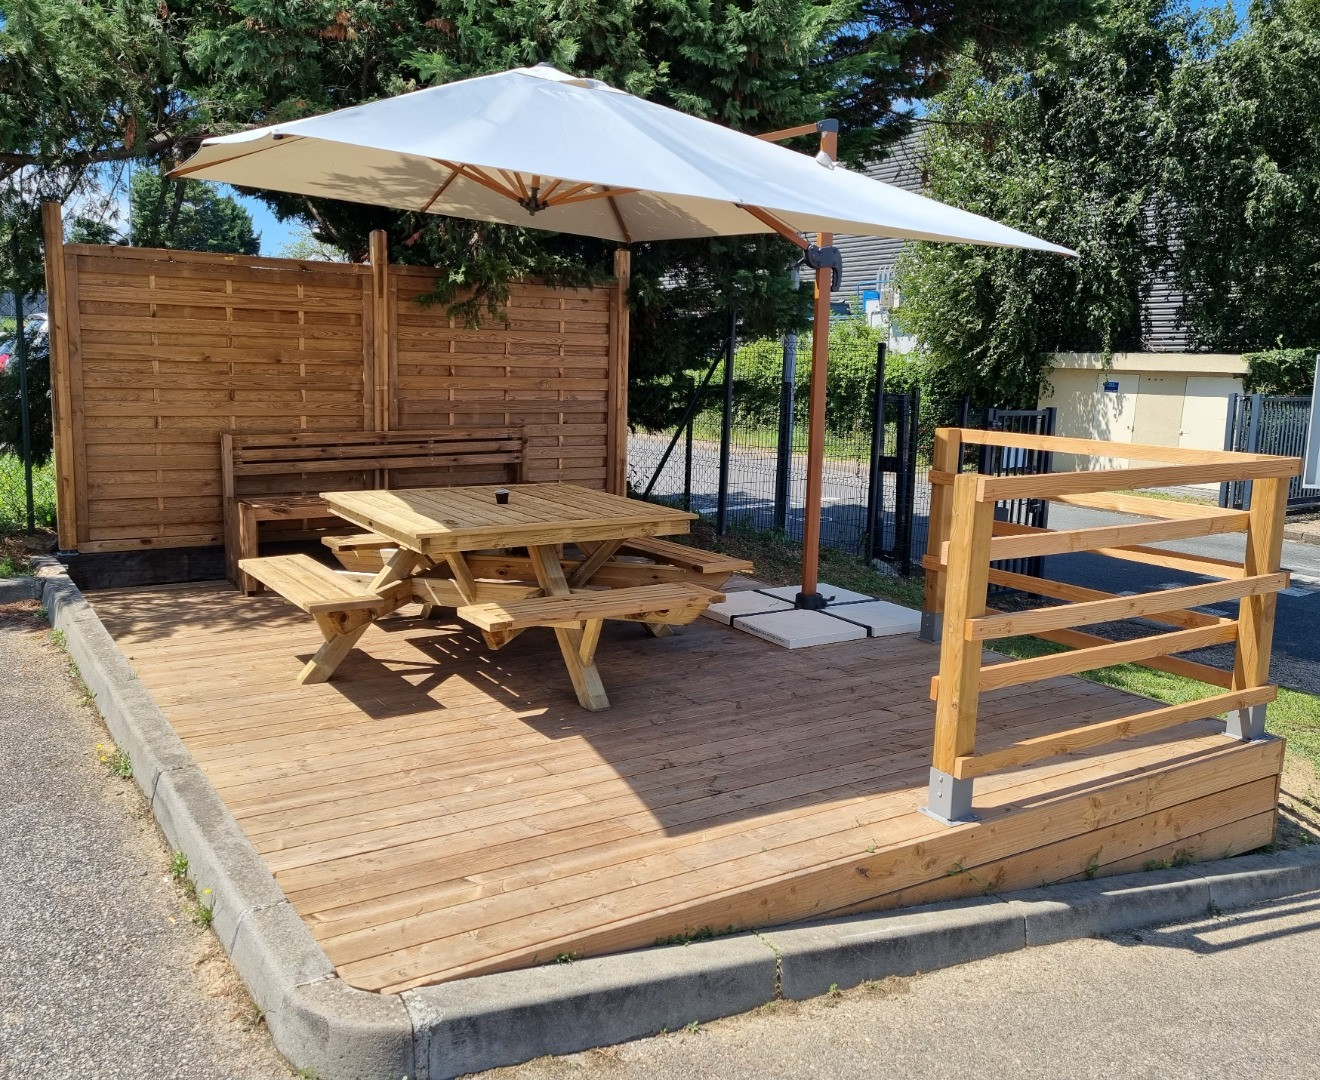 VERT AVENIR PAYSAGE a réalisé l'aménagement d'un espace pique-nique/détente dans un rectangle d'herbe à l'entrée d'une entreprise de Villefranche sur Saône :